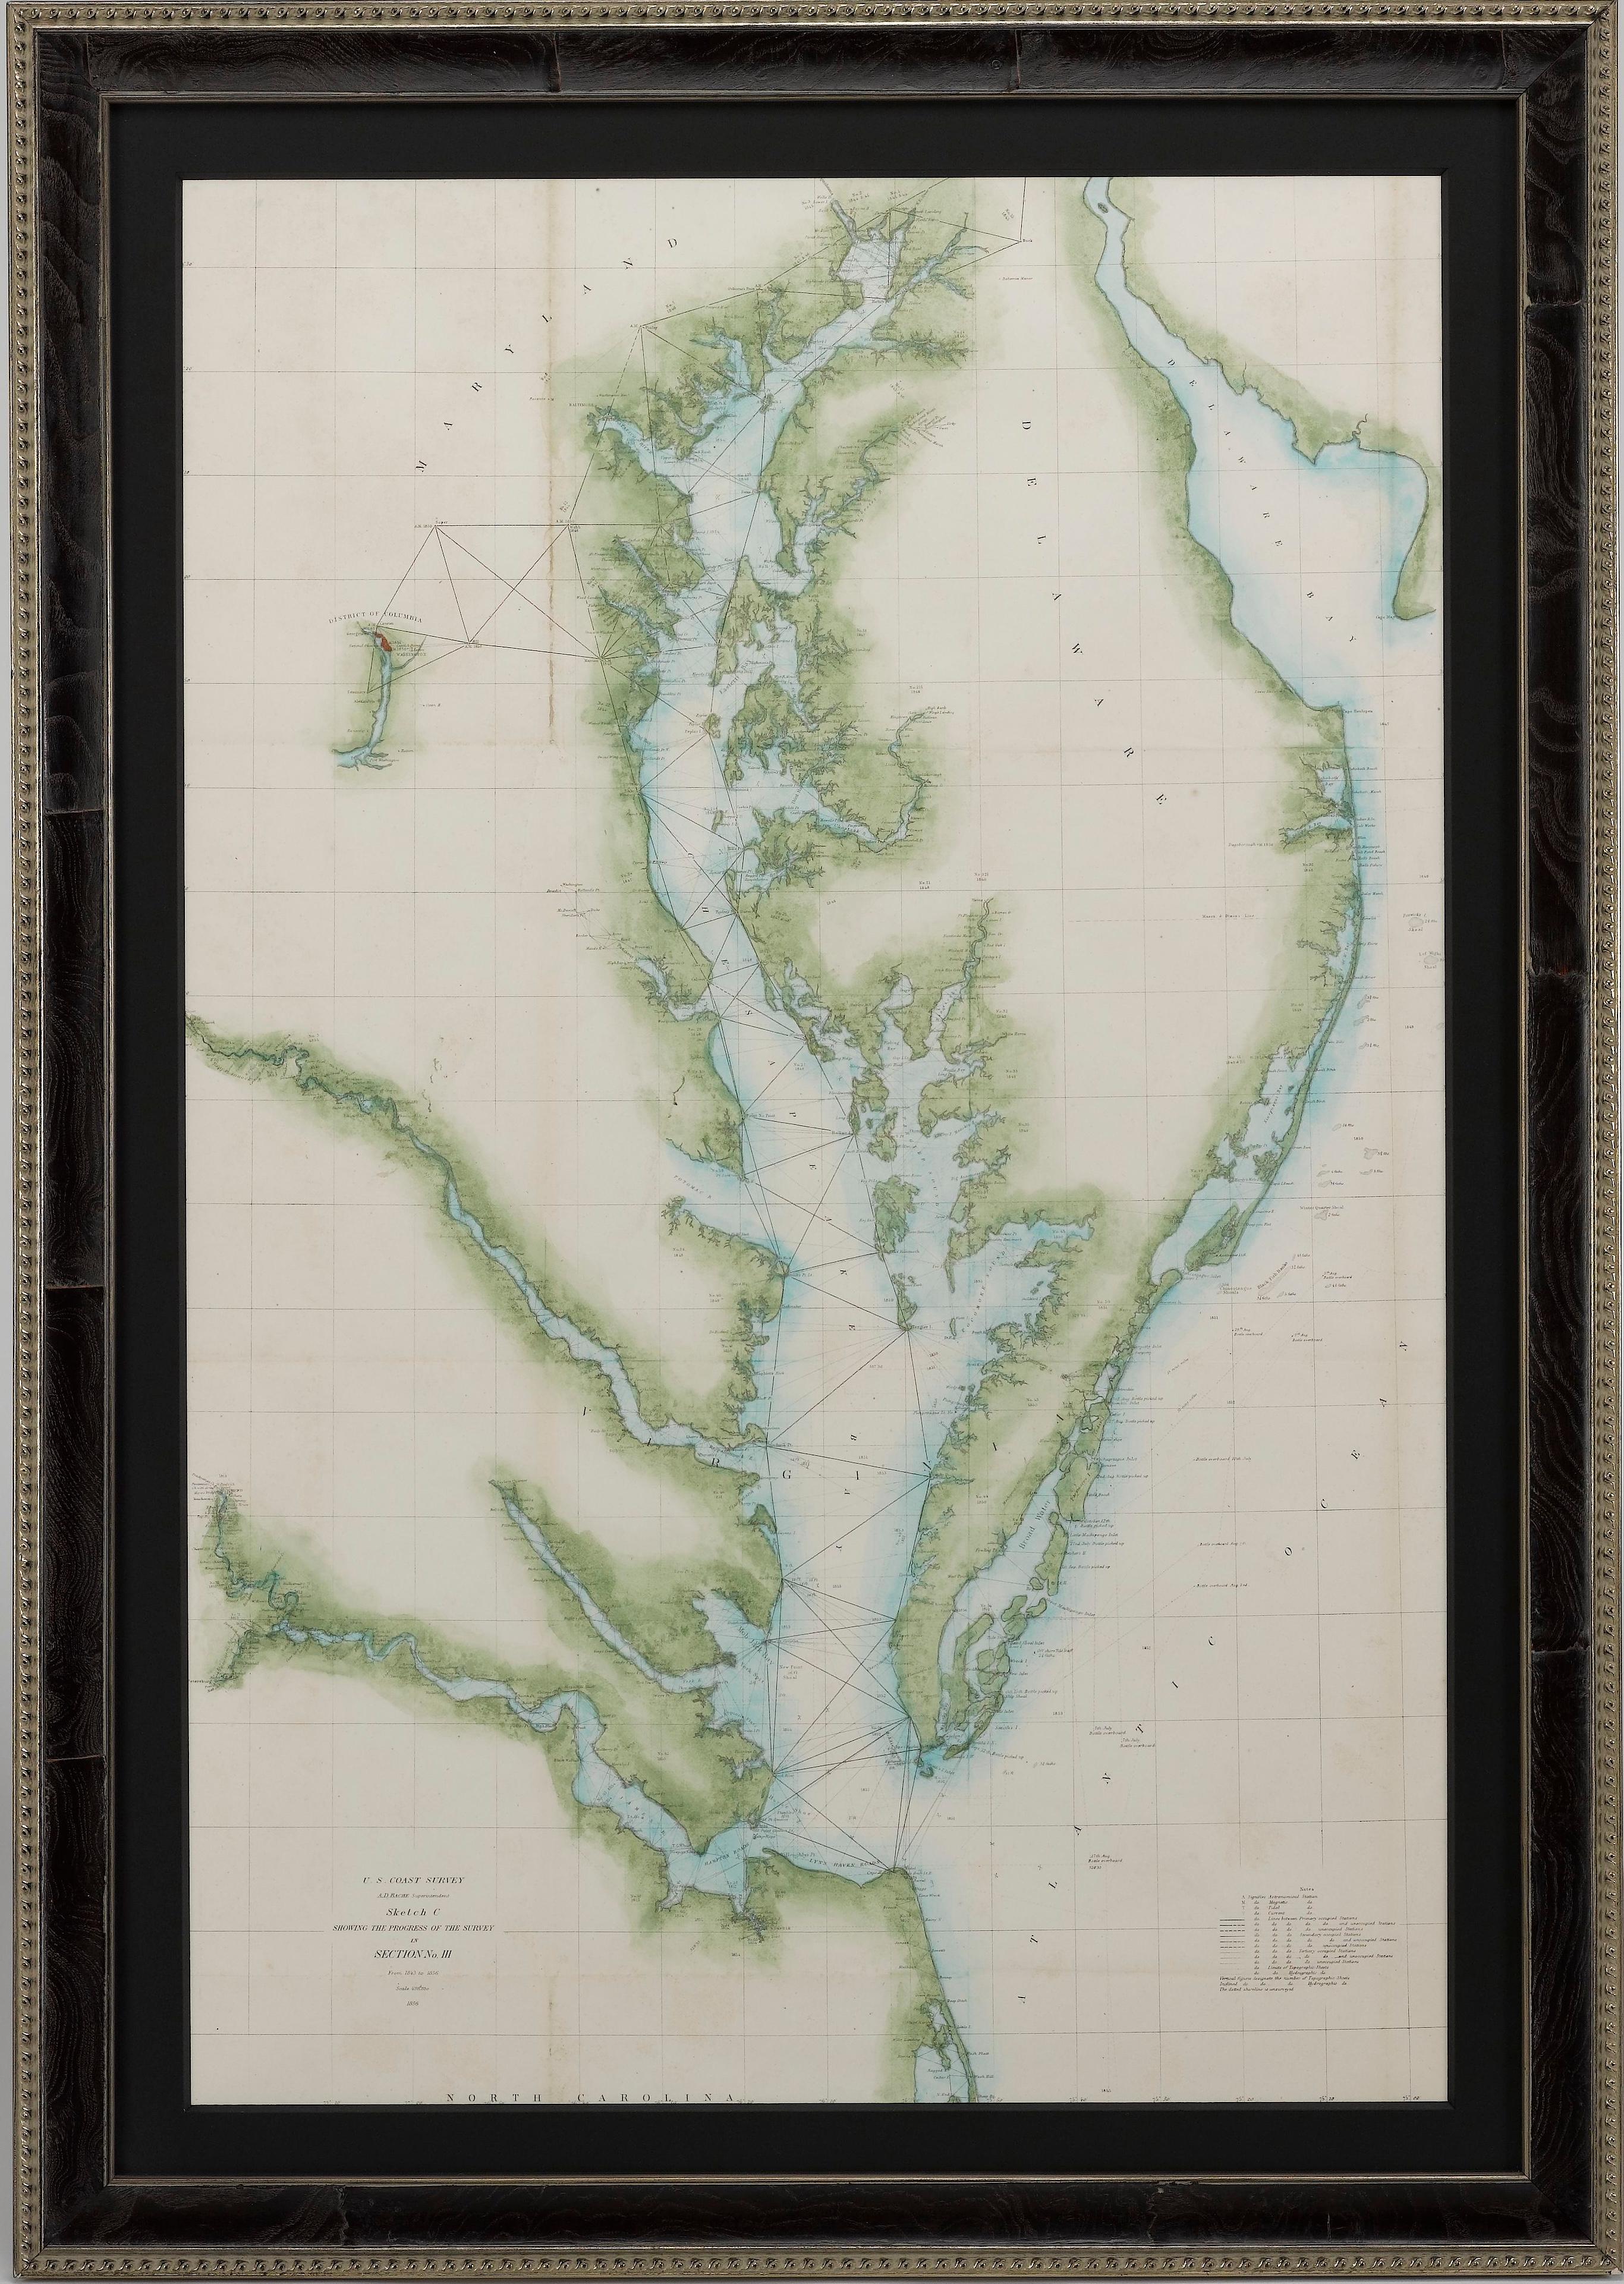 La présente est une carte nautique ou maritime du U.S. Coast Survey de la baie de Chesapeake et de la baie de Delaware datant de 1856. La carte représente la région allant de Susquehanna (Maryland) aux Outer Banks (Caroline du Nord). Il montre